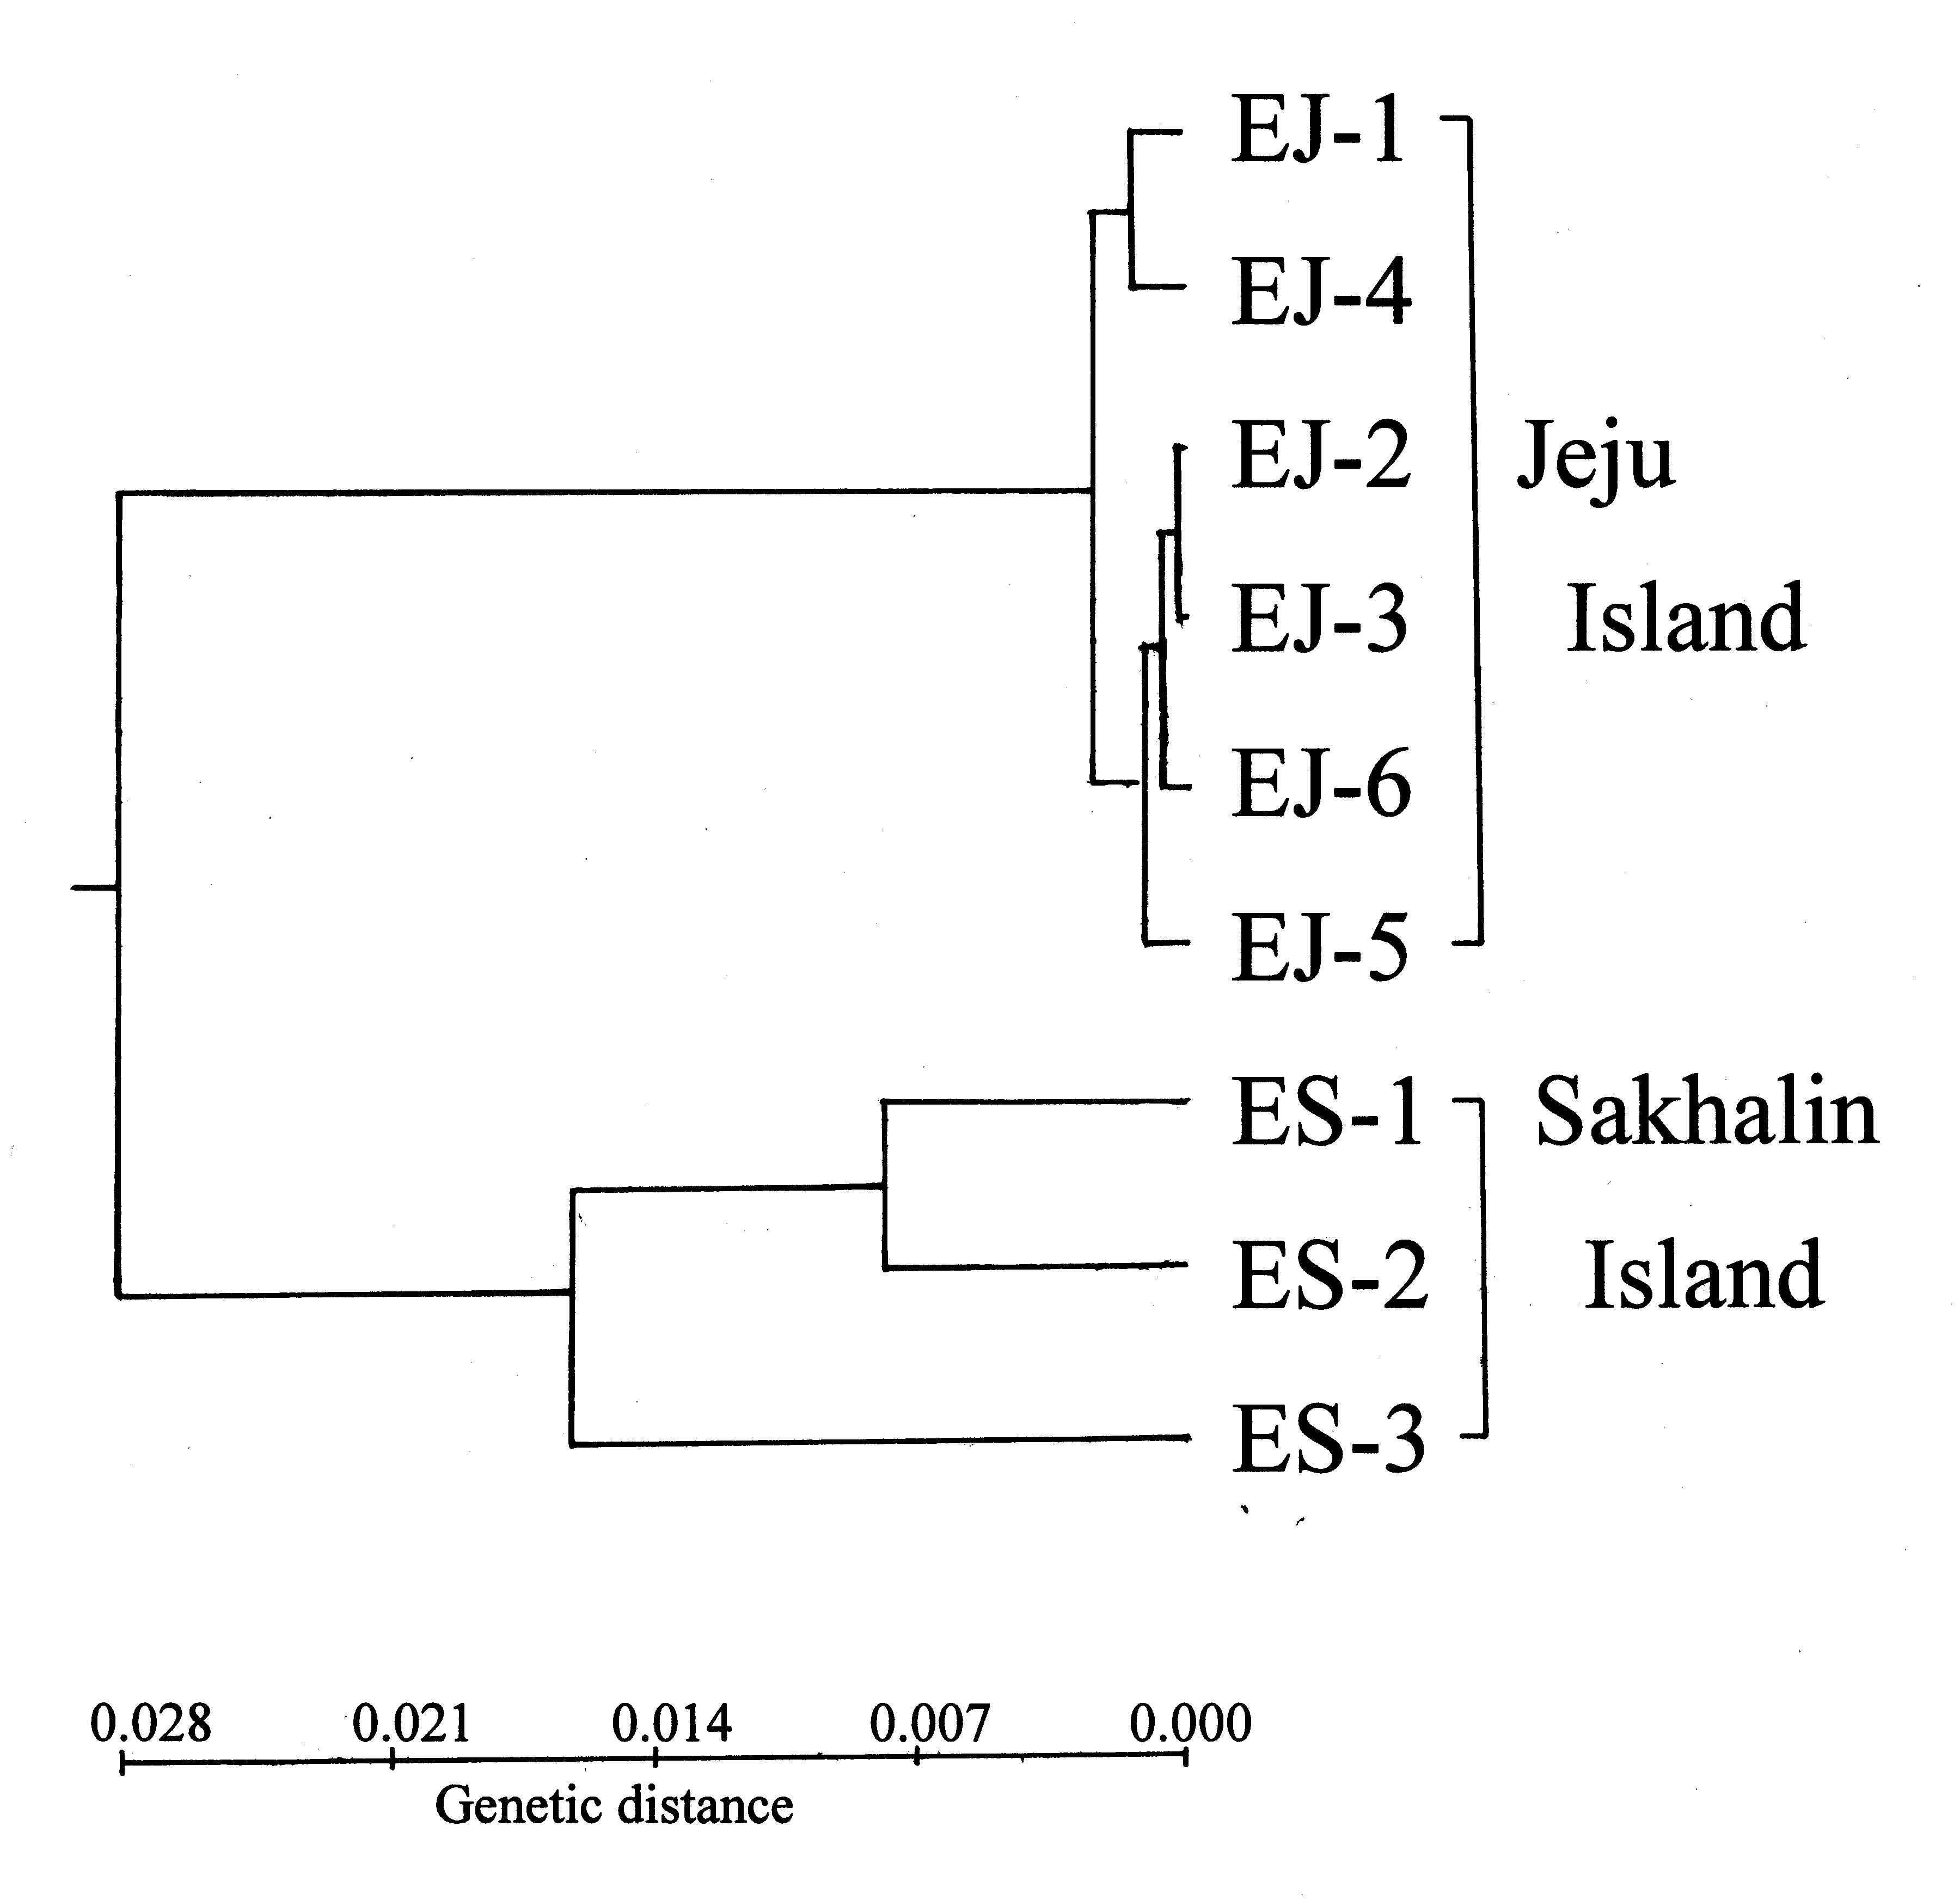 시로미 9곳 집단을 대상으로 Nei’s(1978) 유전적거리(genetic distance) 계수에 근거하여 UPGMA방법에 의한 전형질도(phenogram).